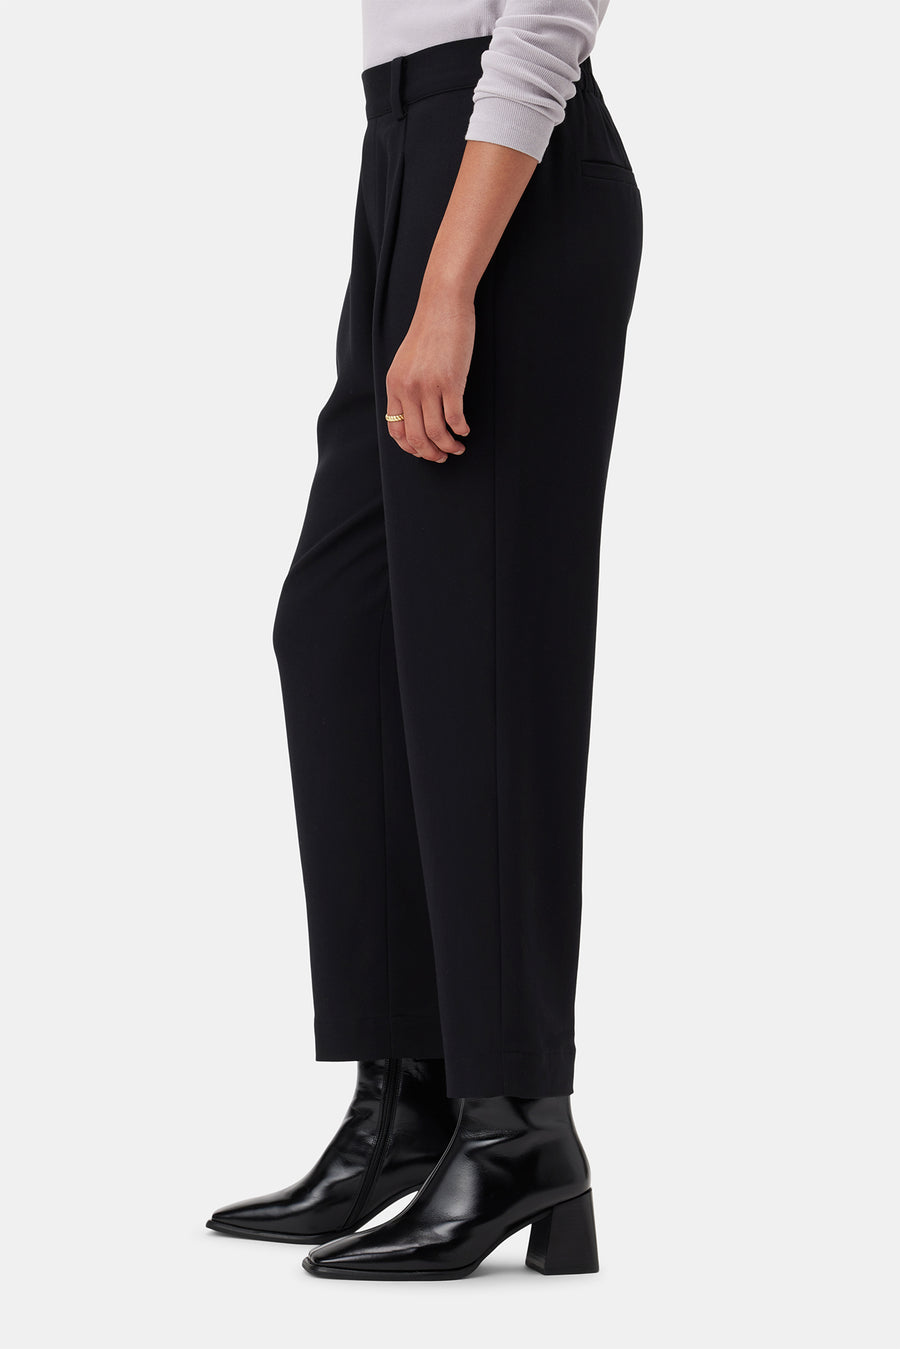 Roni Cotton Modal Spandex Pant - Black